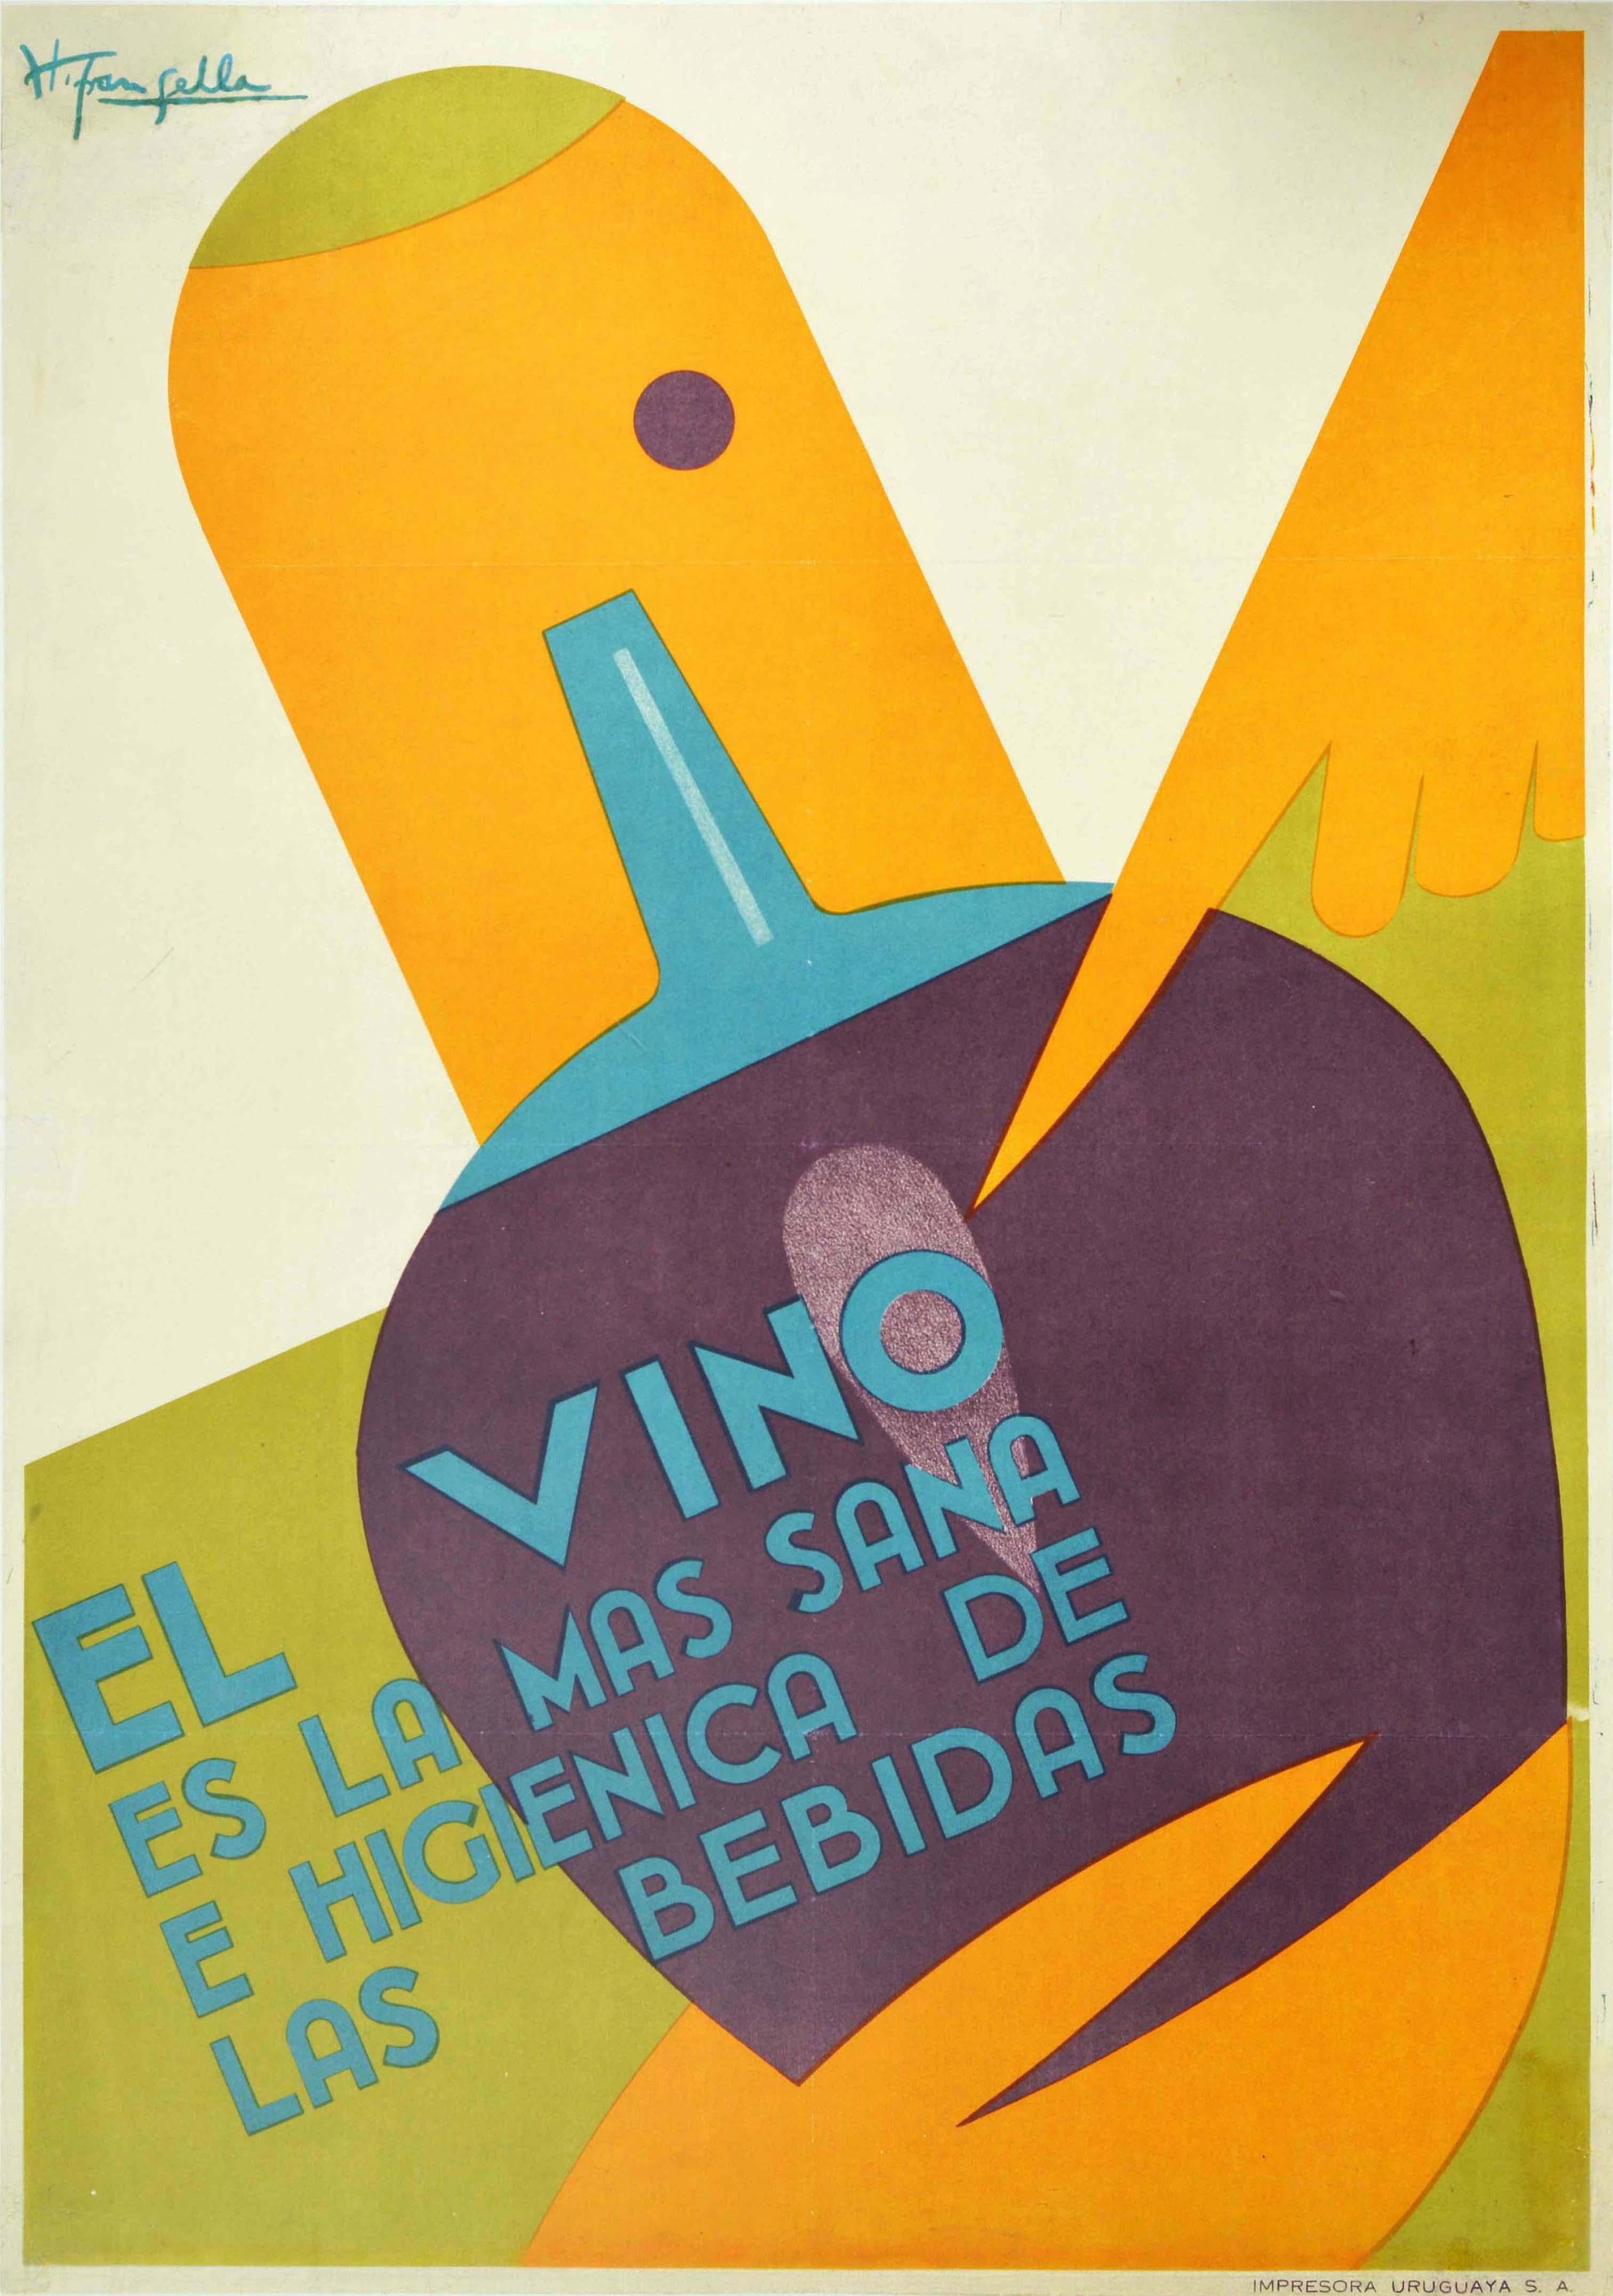 Humberto Frangella Print – Original Vintage-Poster, „El Vino Es La Mas Sana“, Wein, das gesündeste Getränk, Pasteur